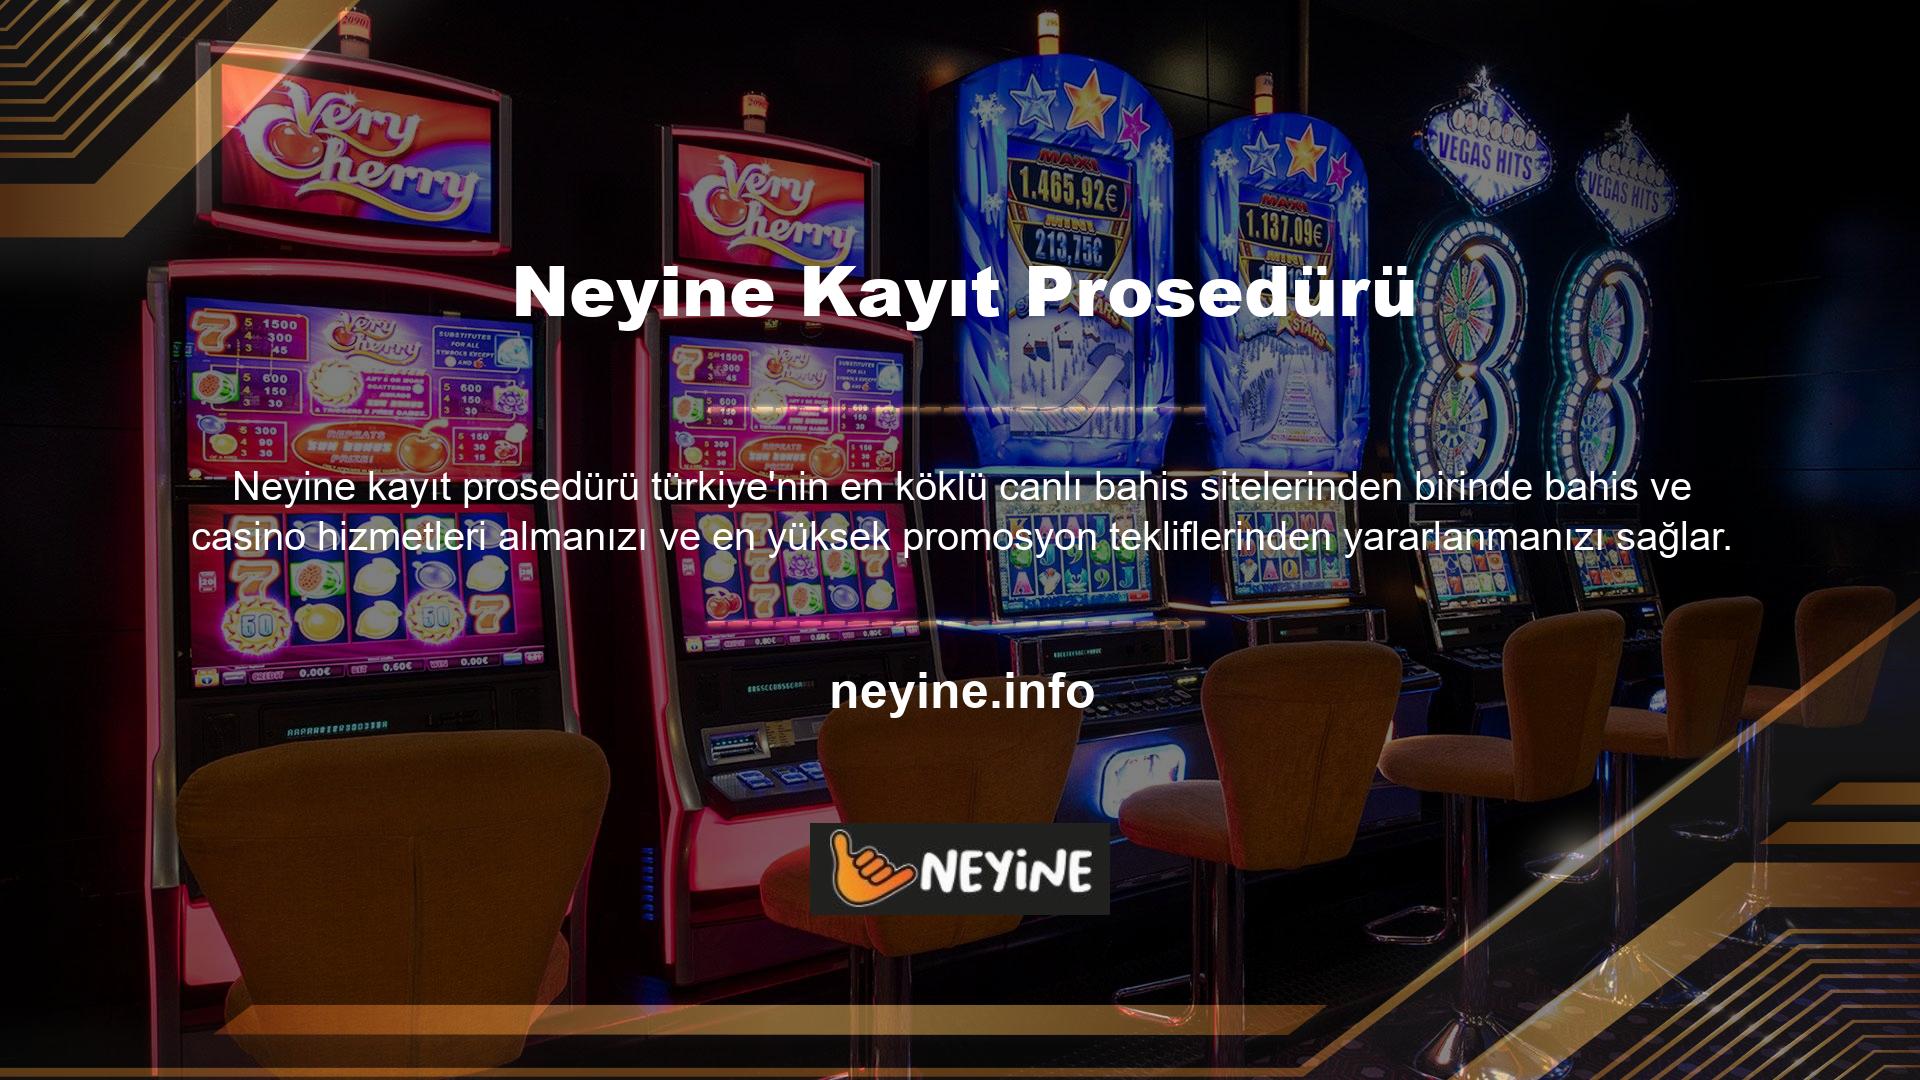 Mobil bahis ve casino çeşitliliği, Türk oyunları, sanal bahisler ve canlı bingo için ucuz bilet fiyatları sitenin avantajlarıdır